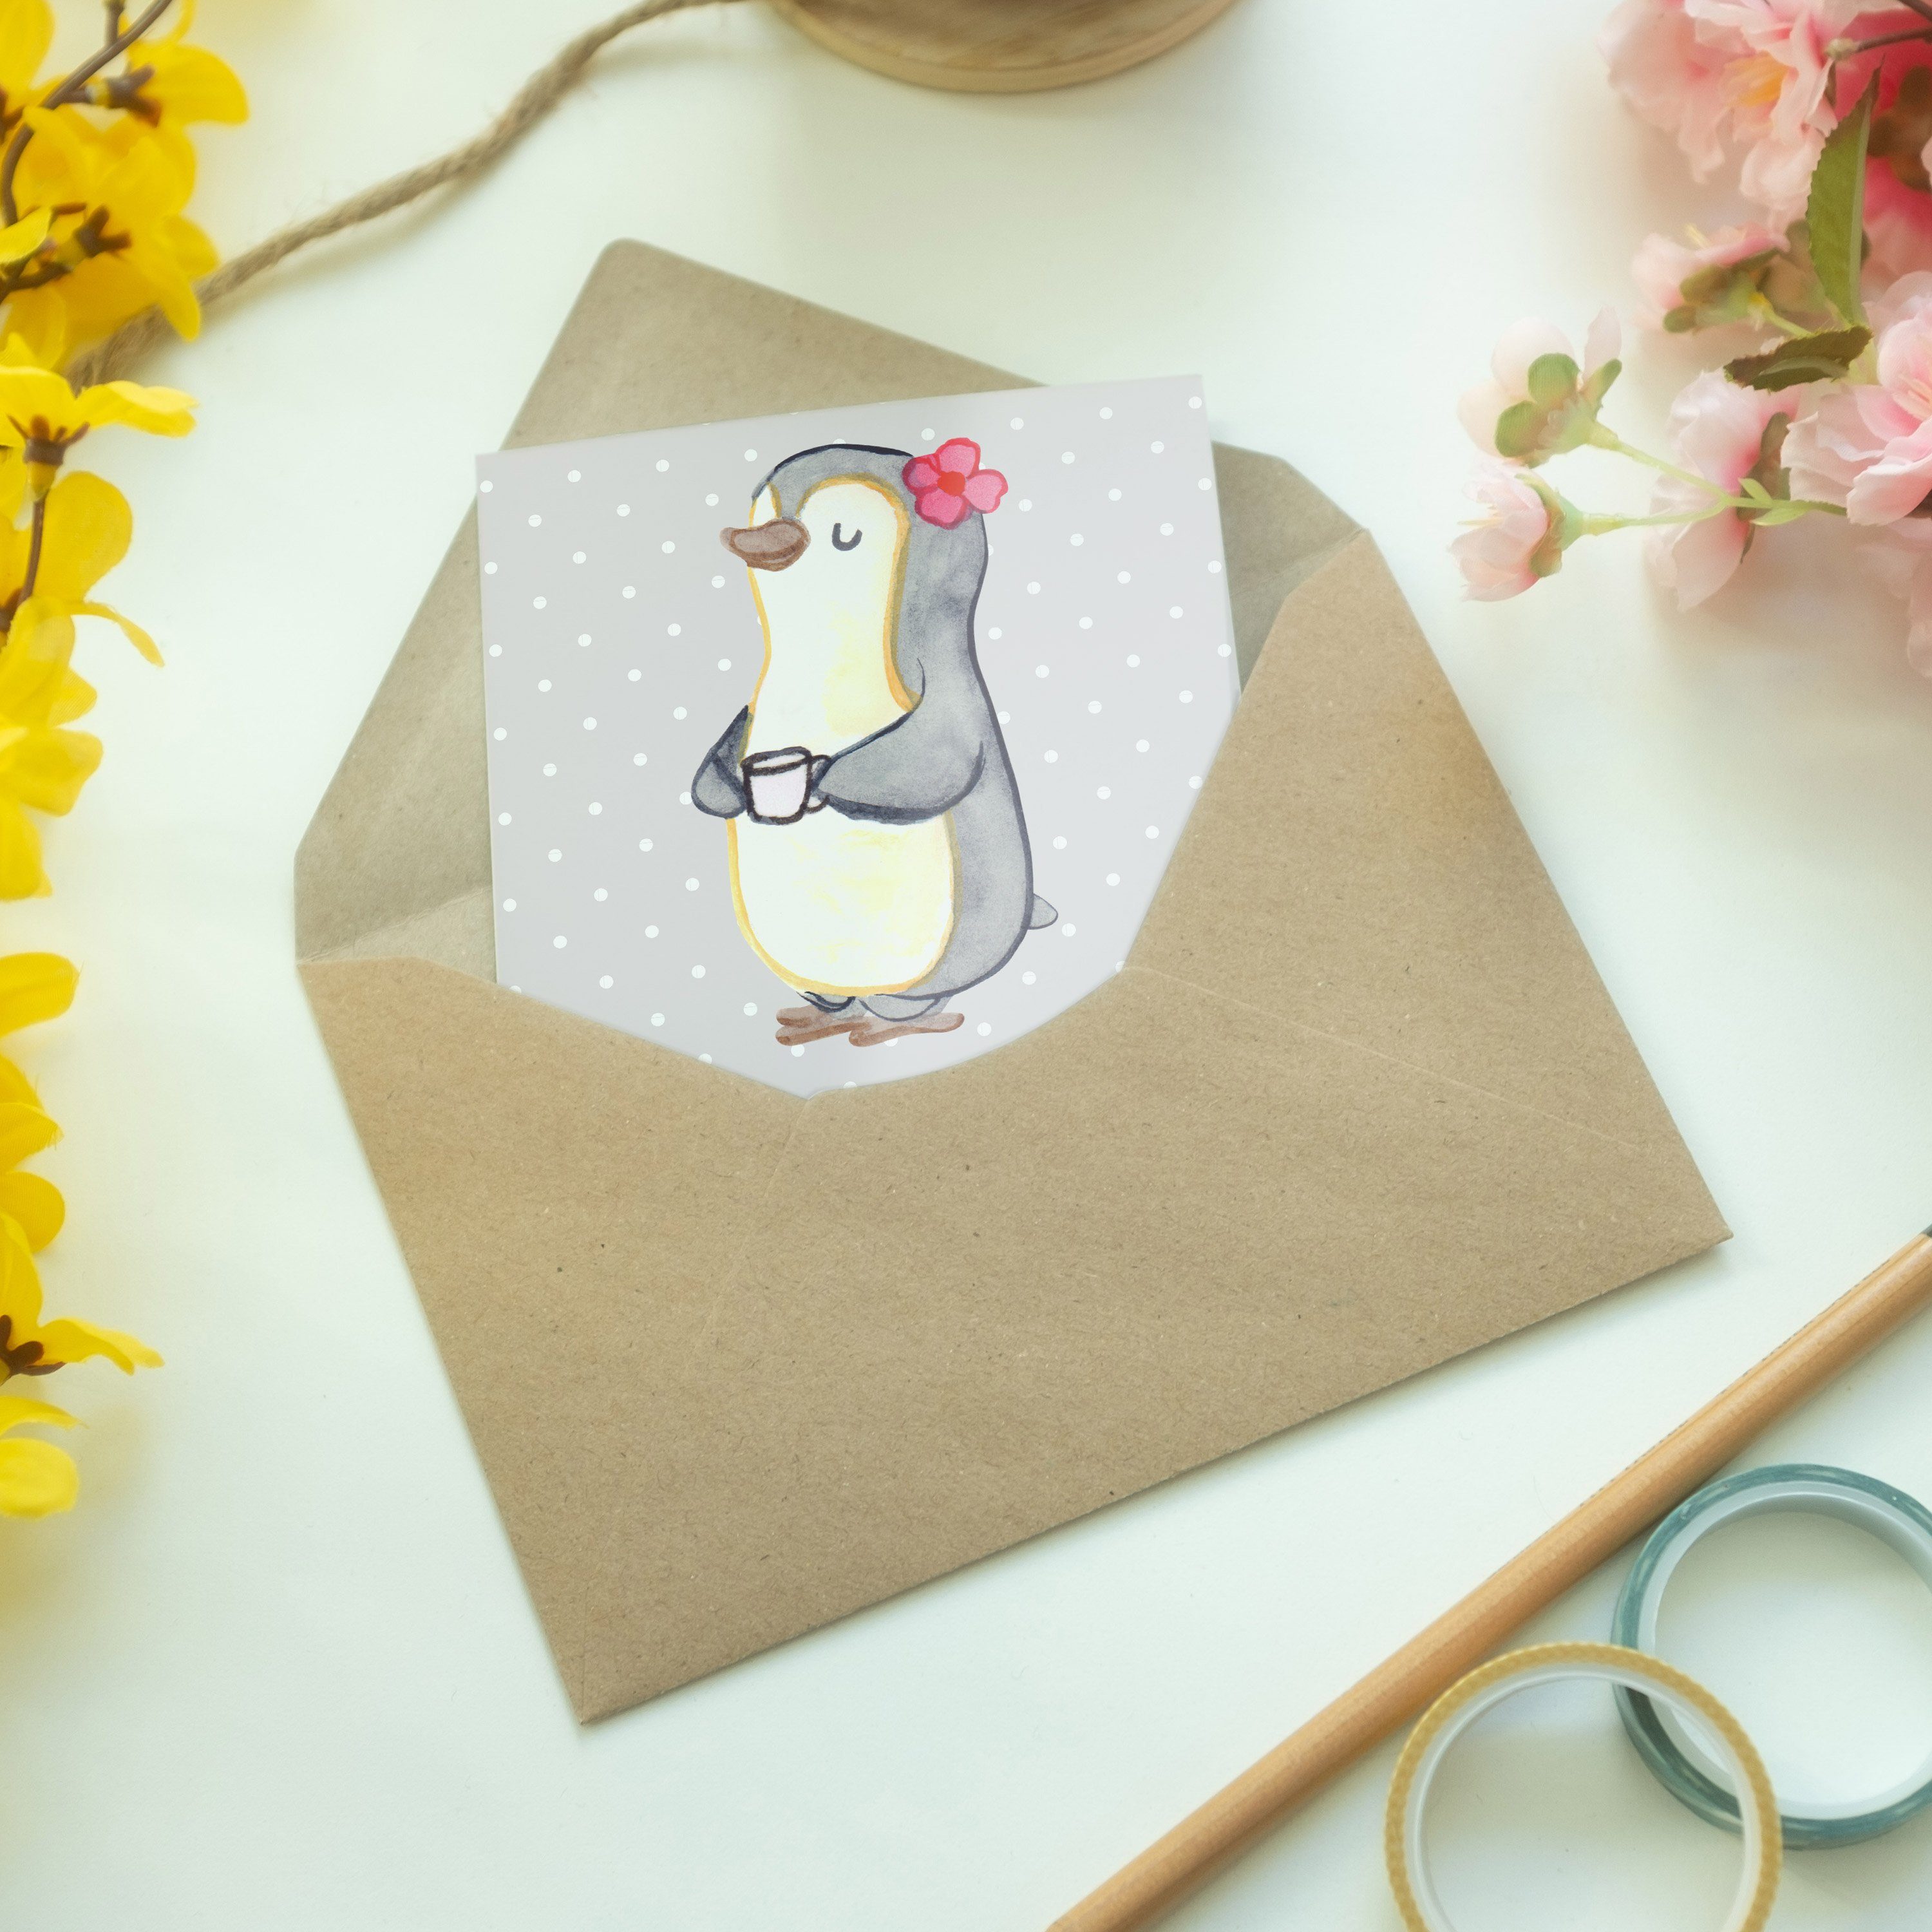 Beste Geschenk, Mrs. Panda Pastell der & Grußkarte Mr. Pinguin Schwiegermutter - Grau - Kla Welt